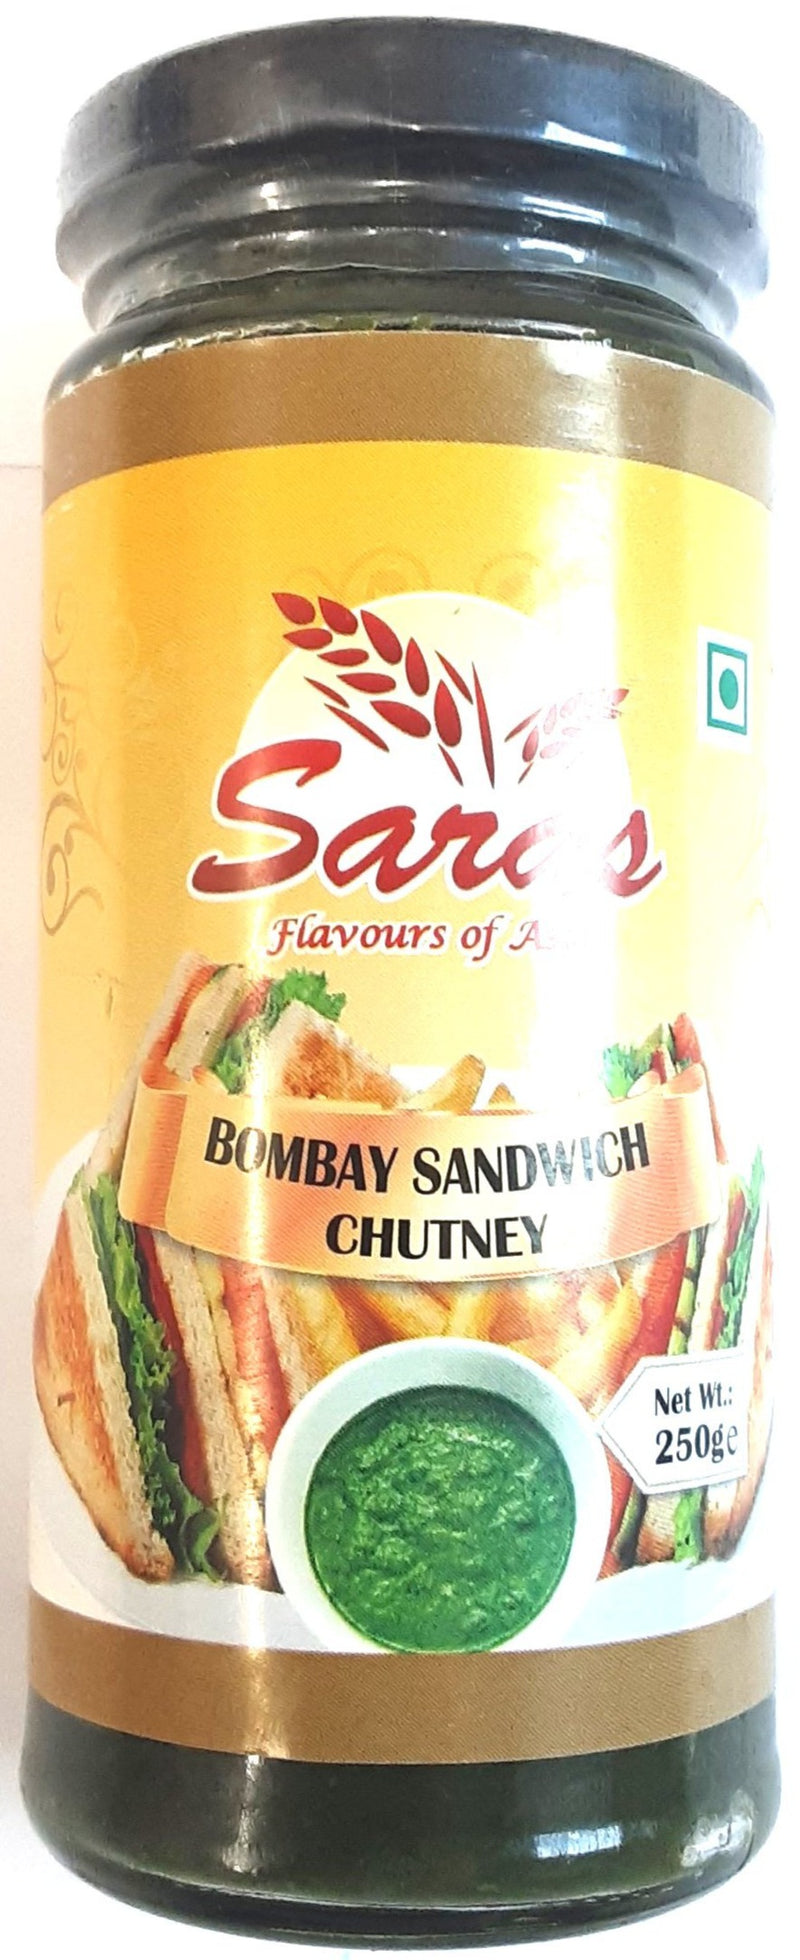 Saras Bombay Sandwich Chutney 250g